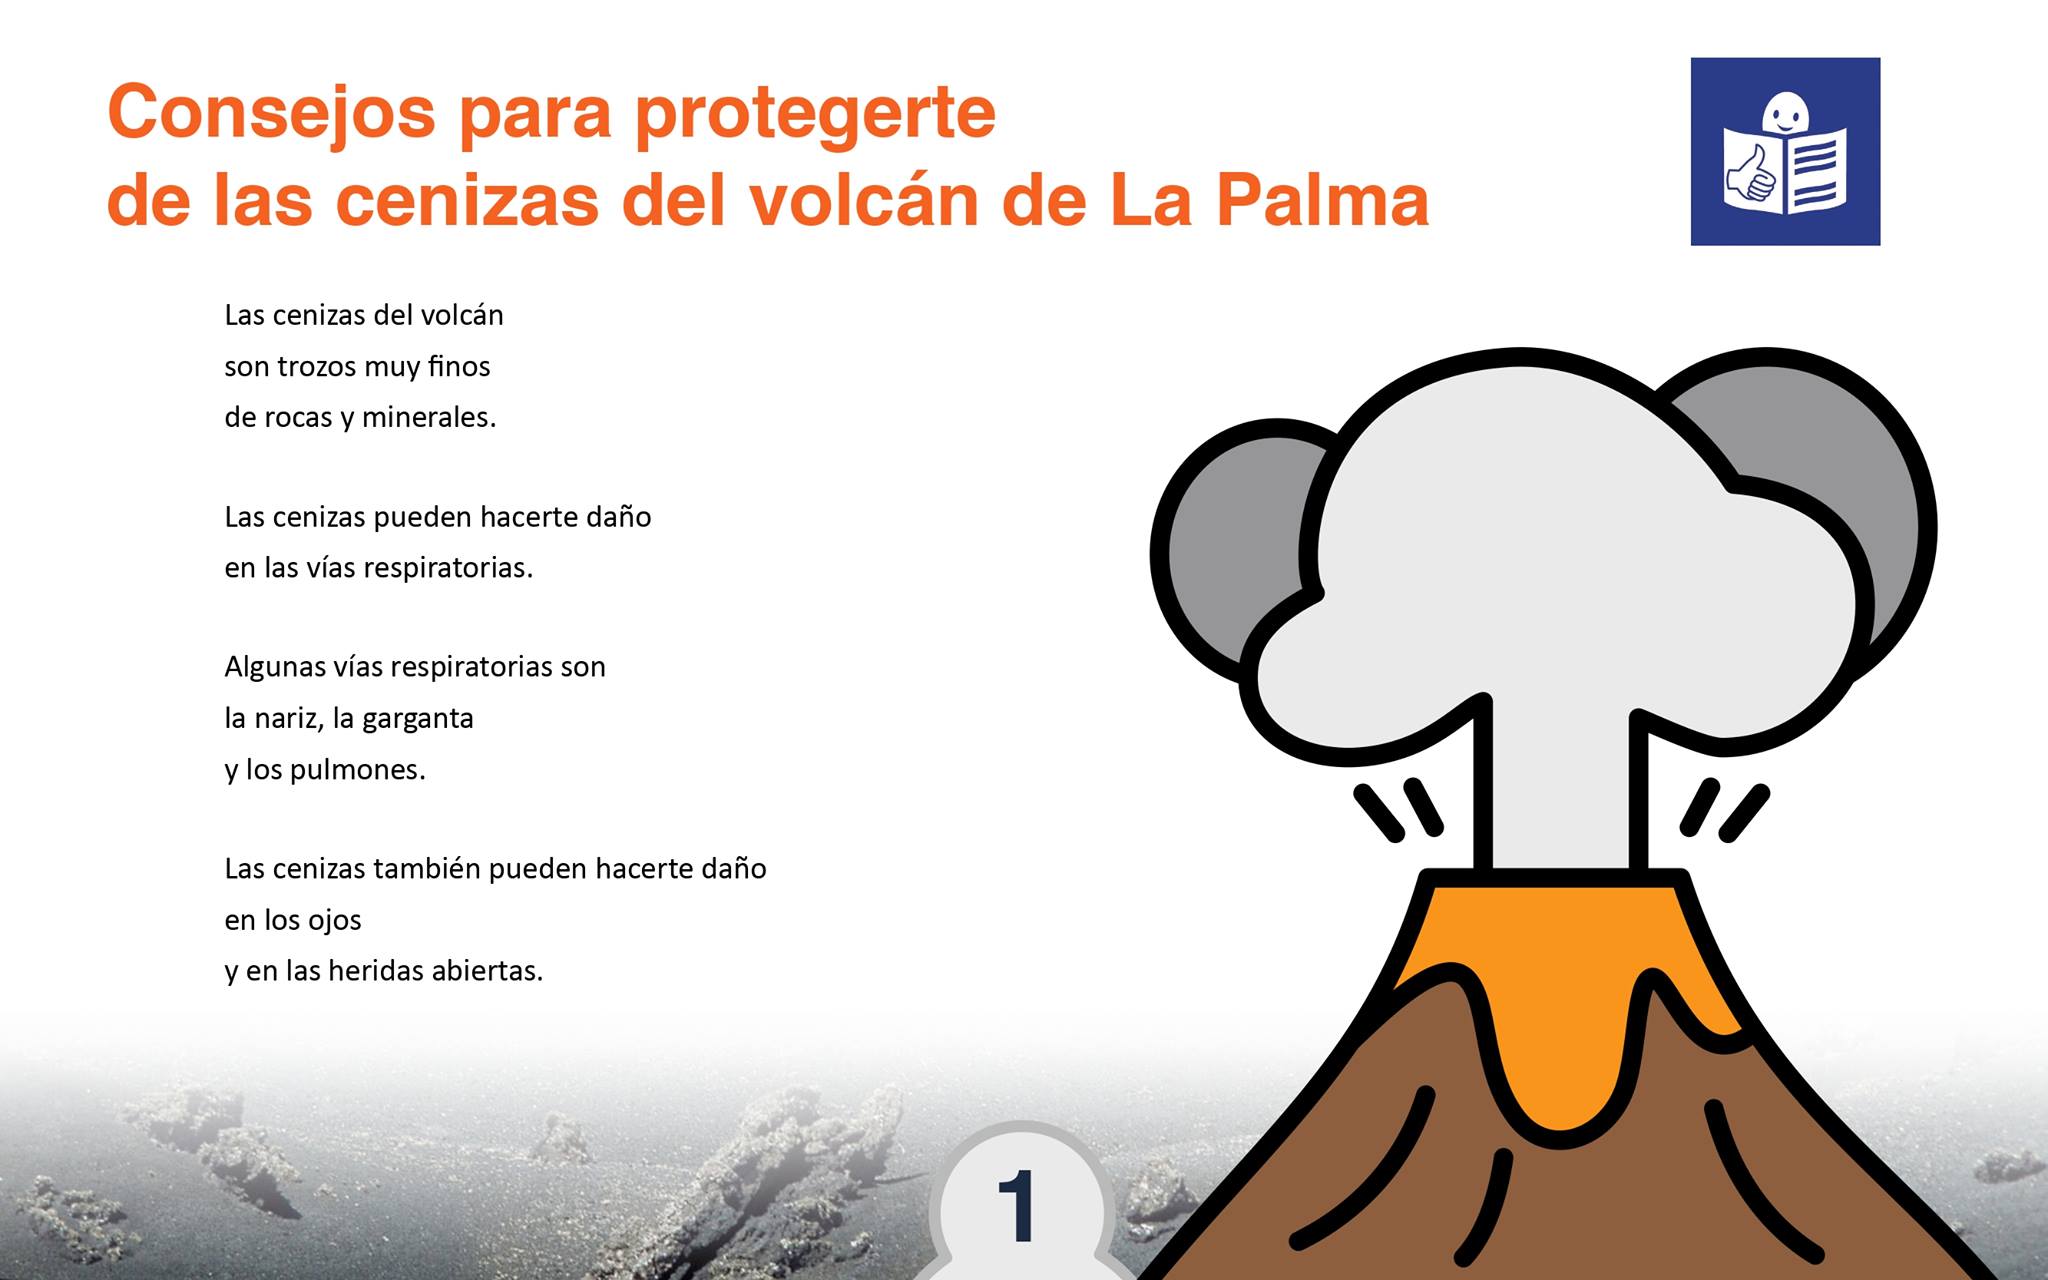 Guía en Lectura Fácil para protegernos de la ceniza del volcán